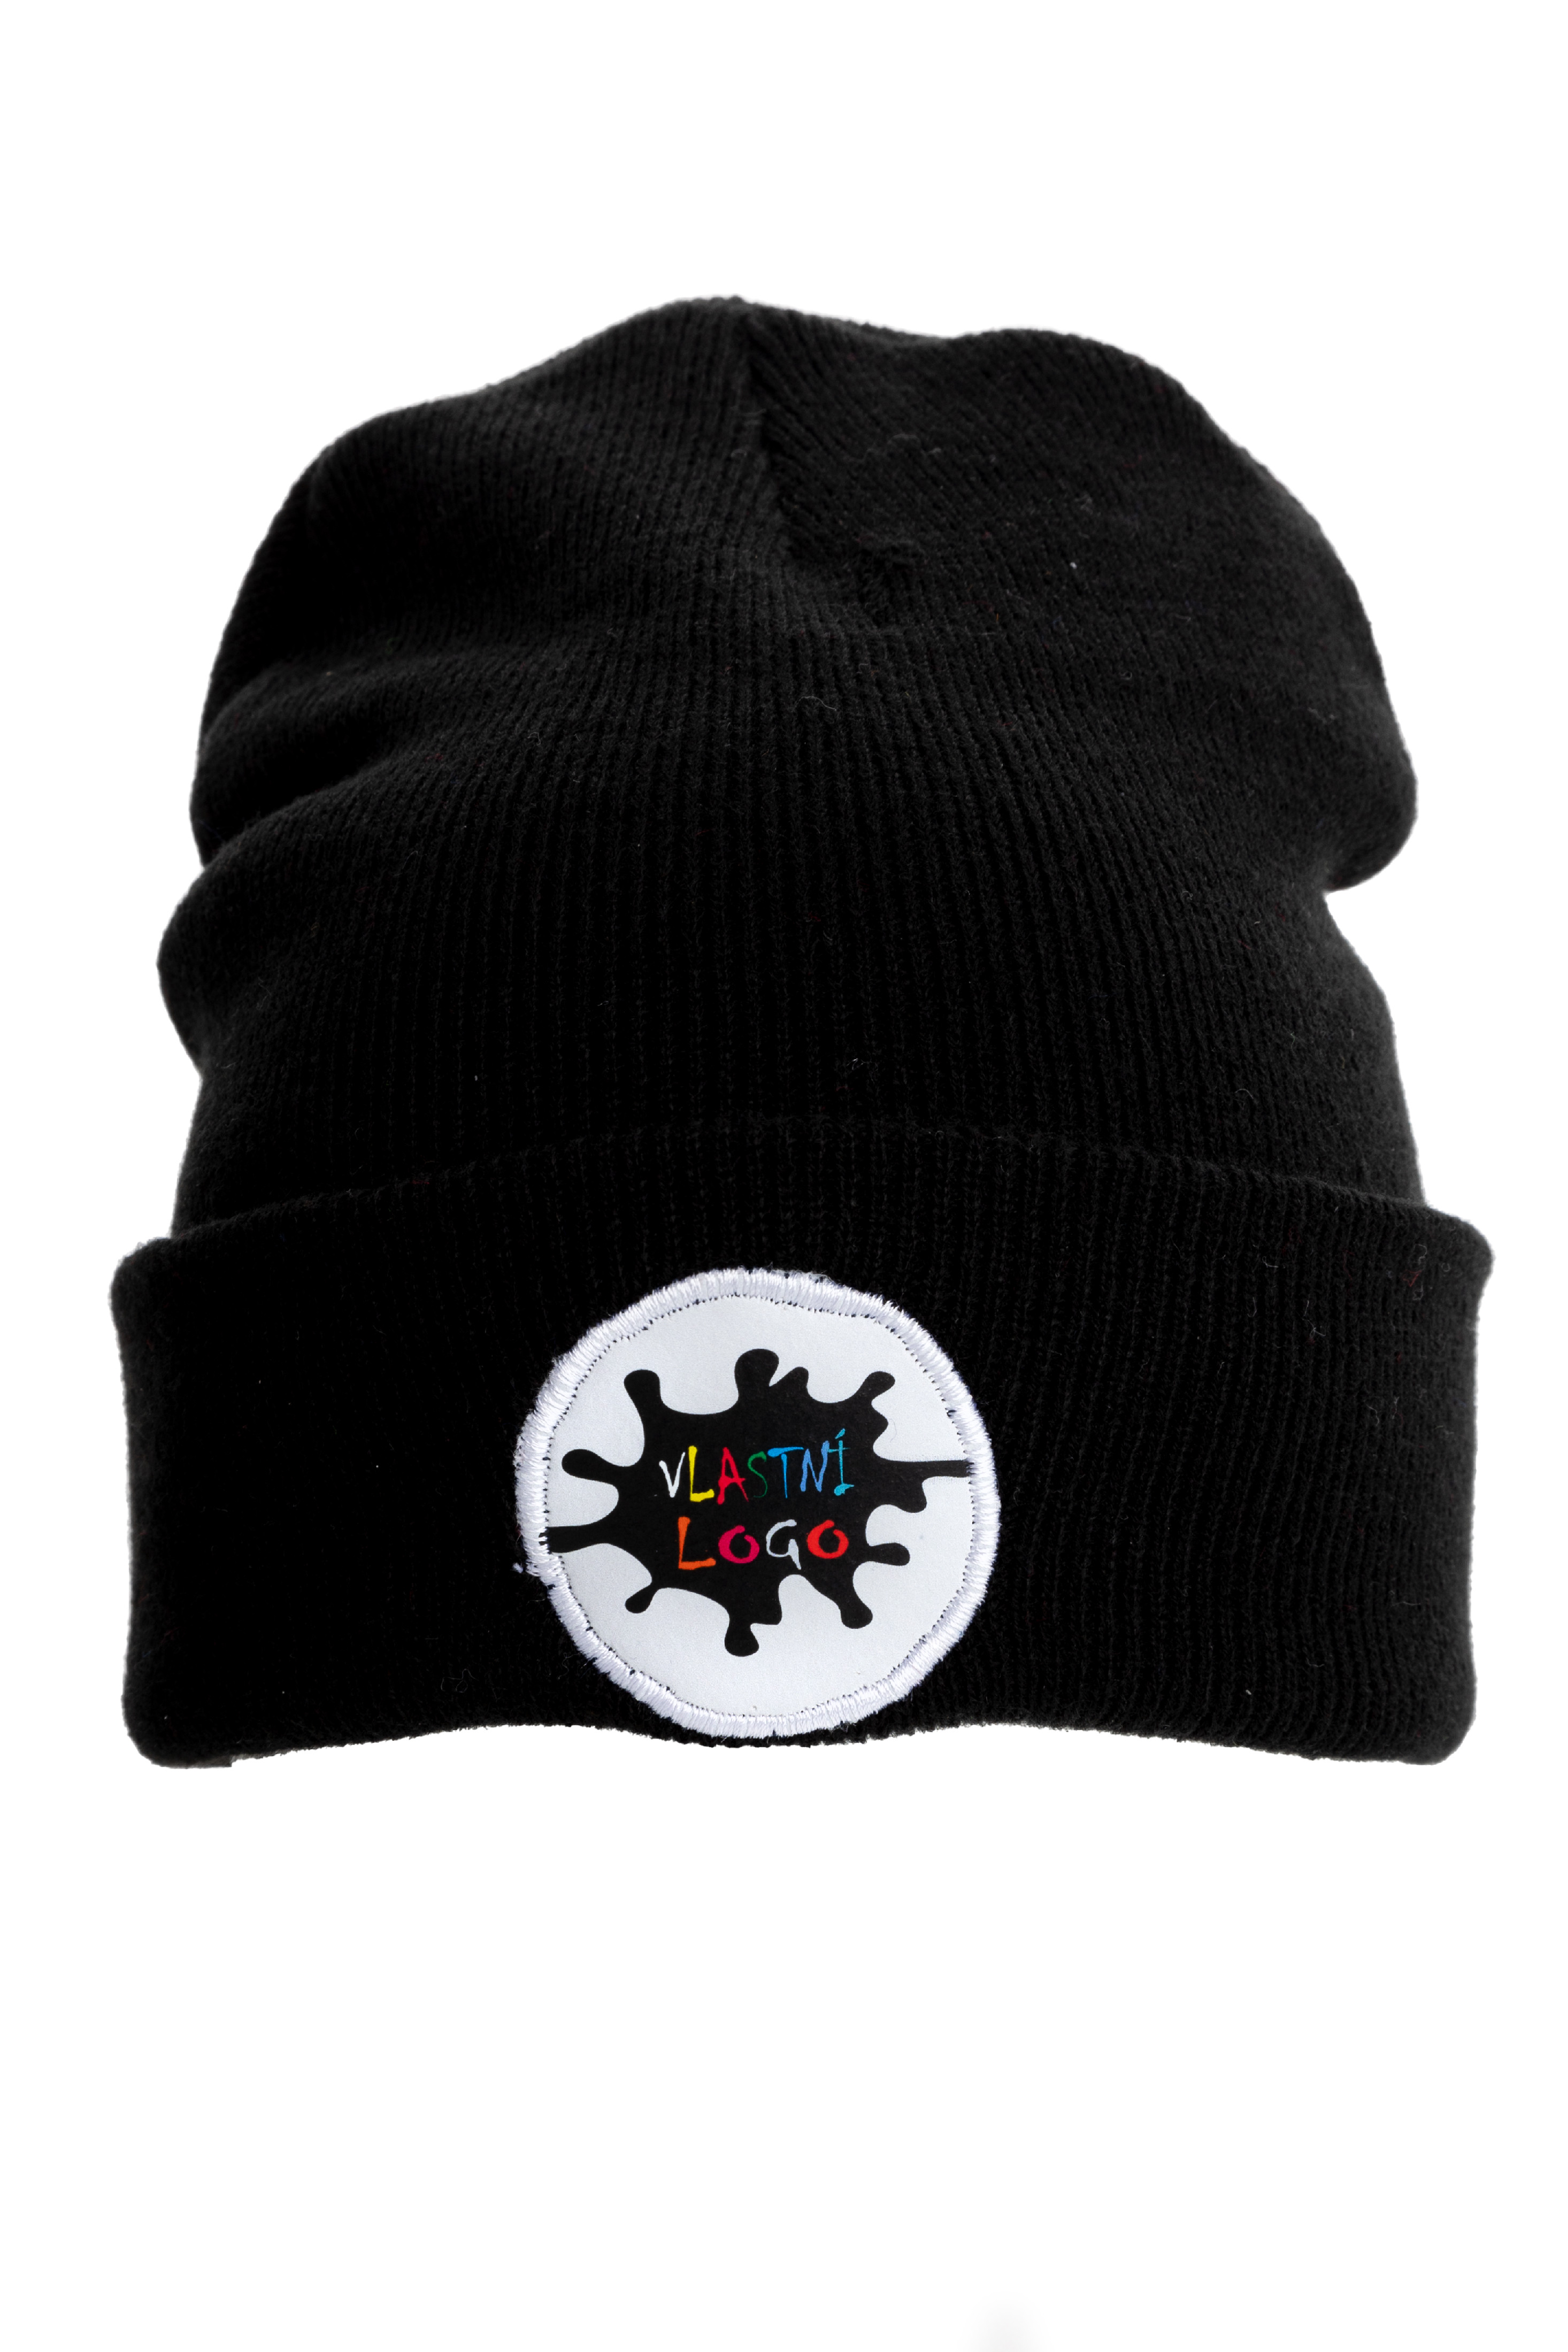 Originální zimní čepice s potisknutelnou nášivkou Barva: černá